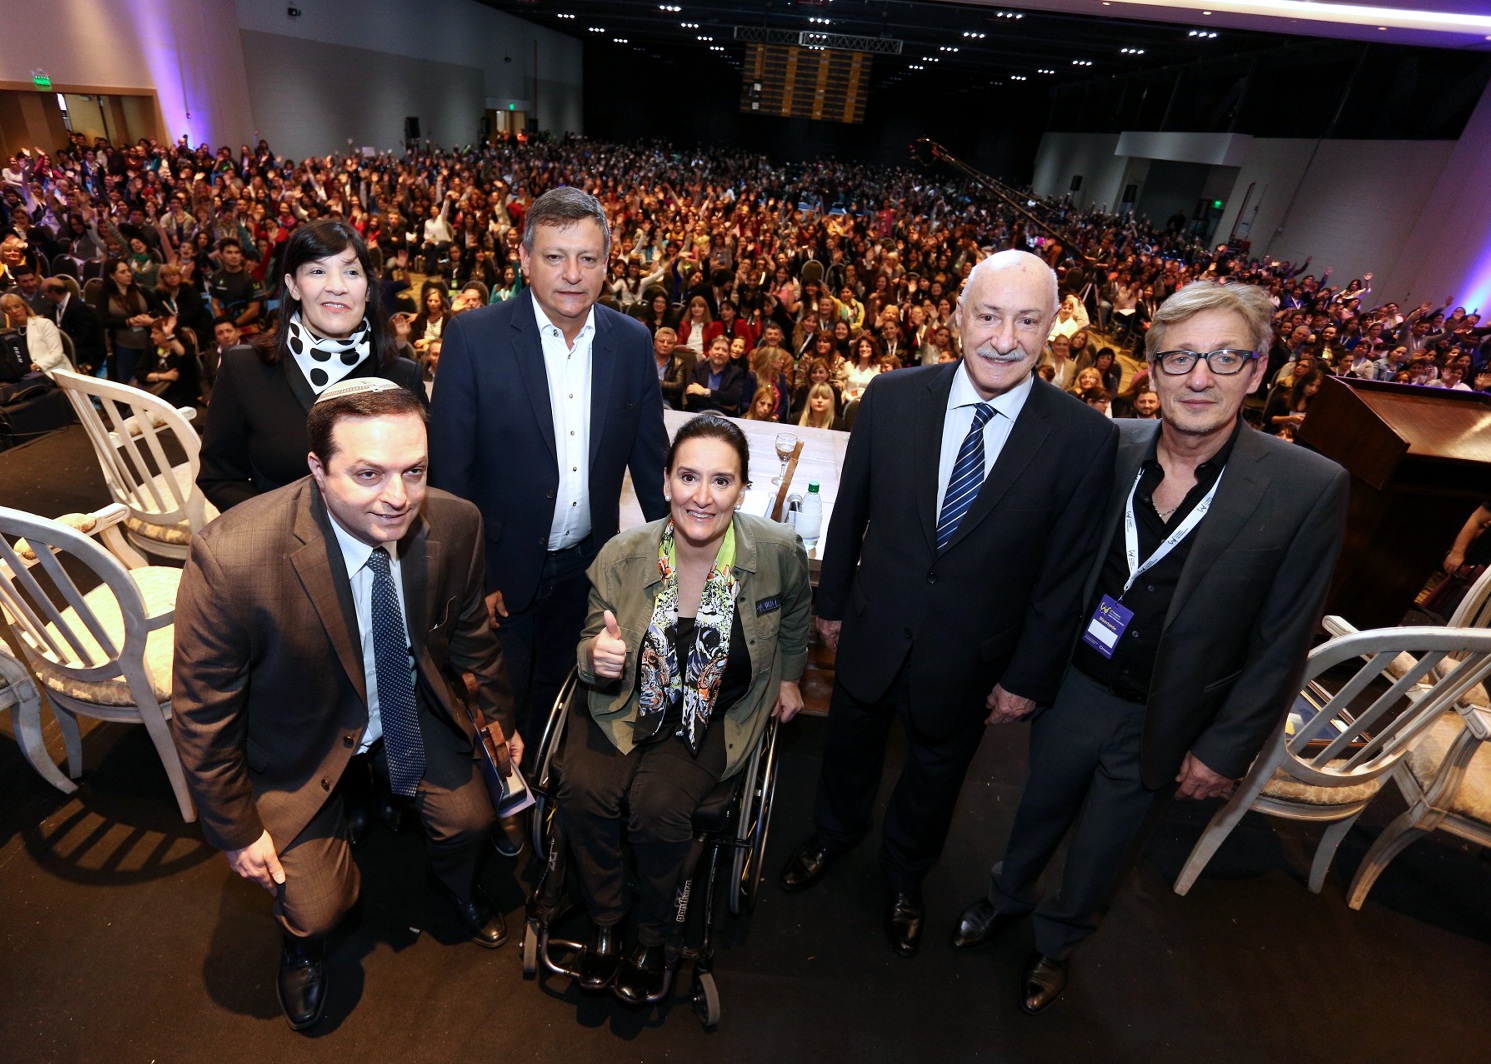 Michetti en el 4º Congreso Internacional sobre Discapacidad